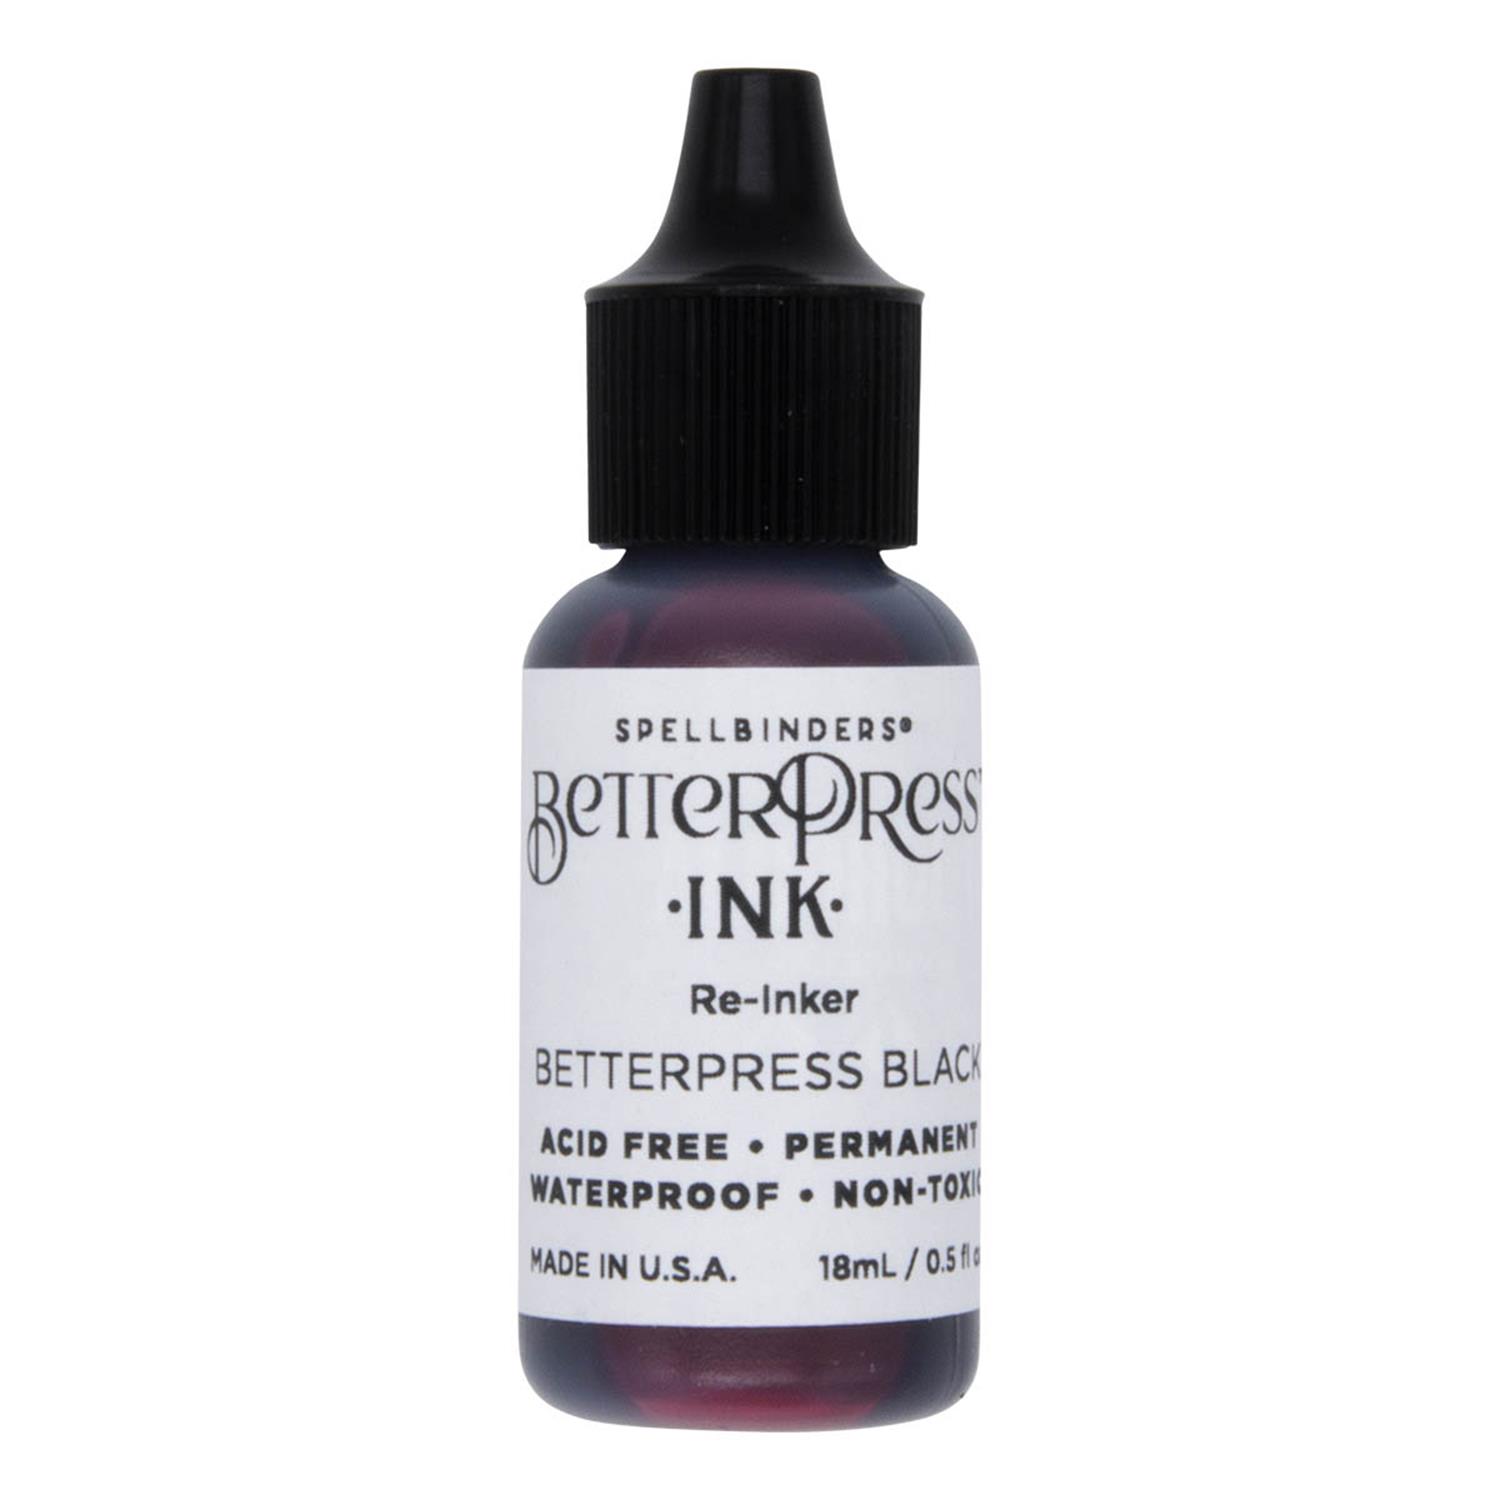 Spellbinders BetterPress Ink Re-Inker Pick N Mix - Choose 2 - Black